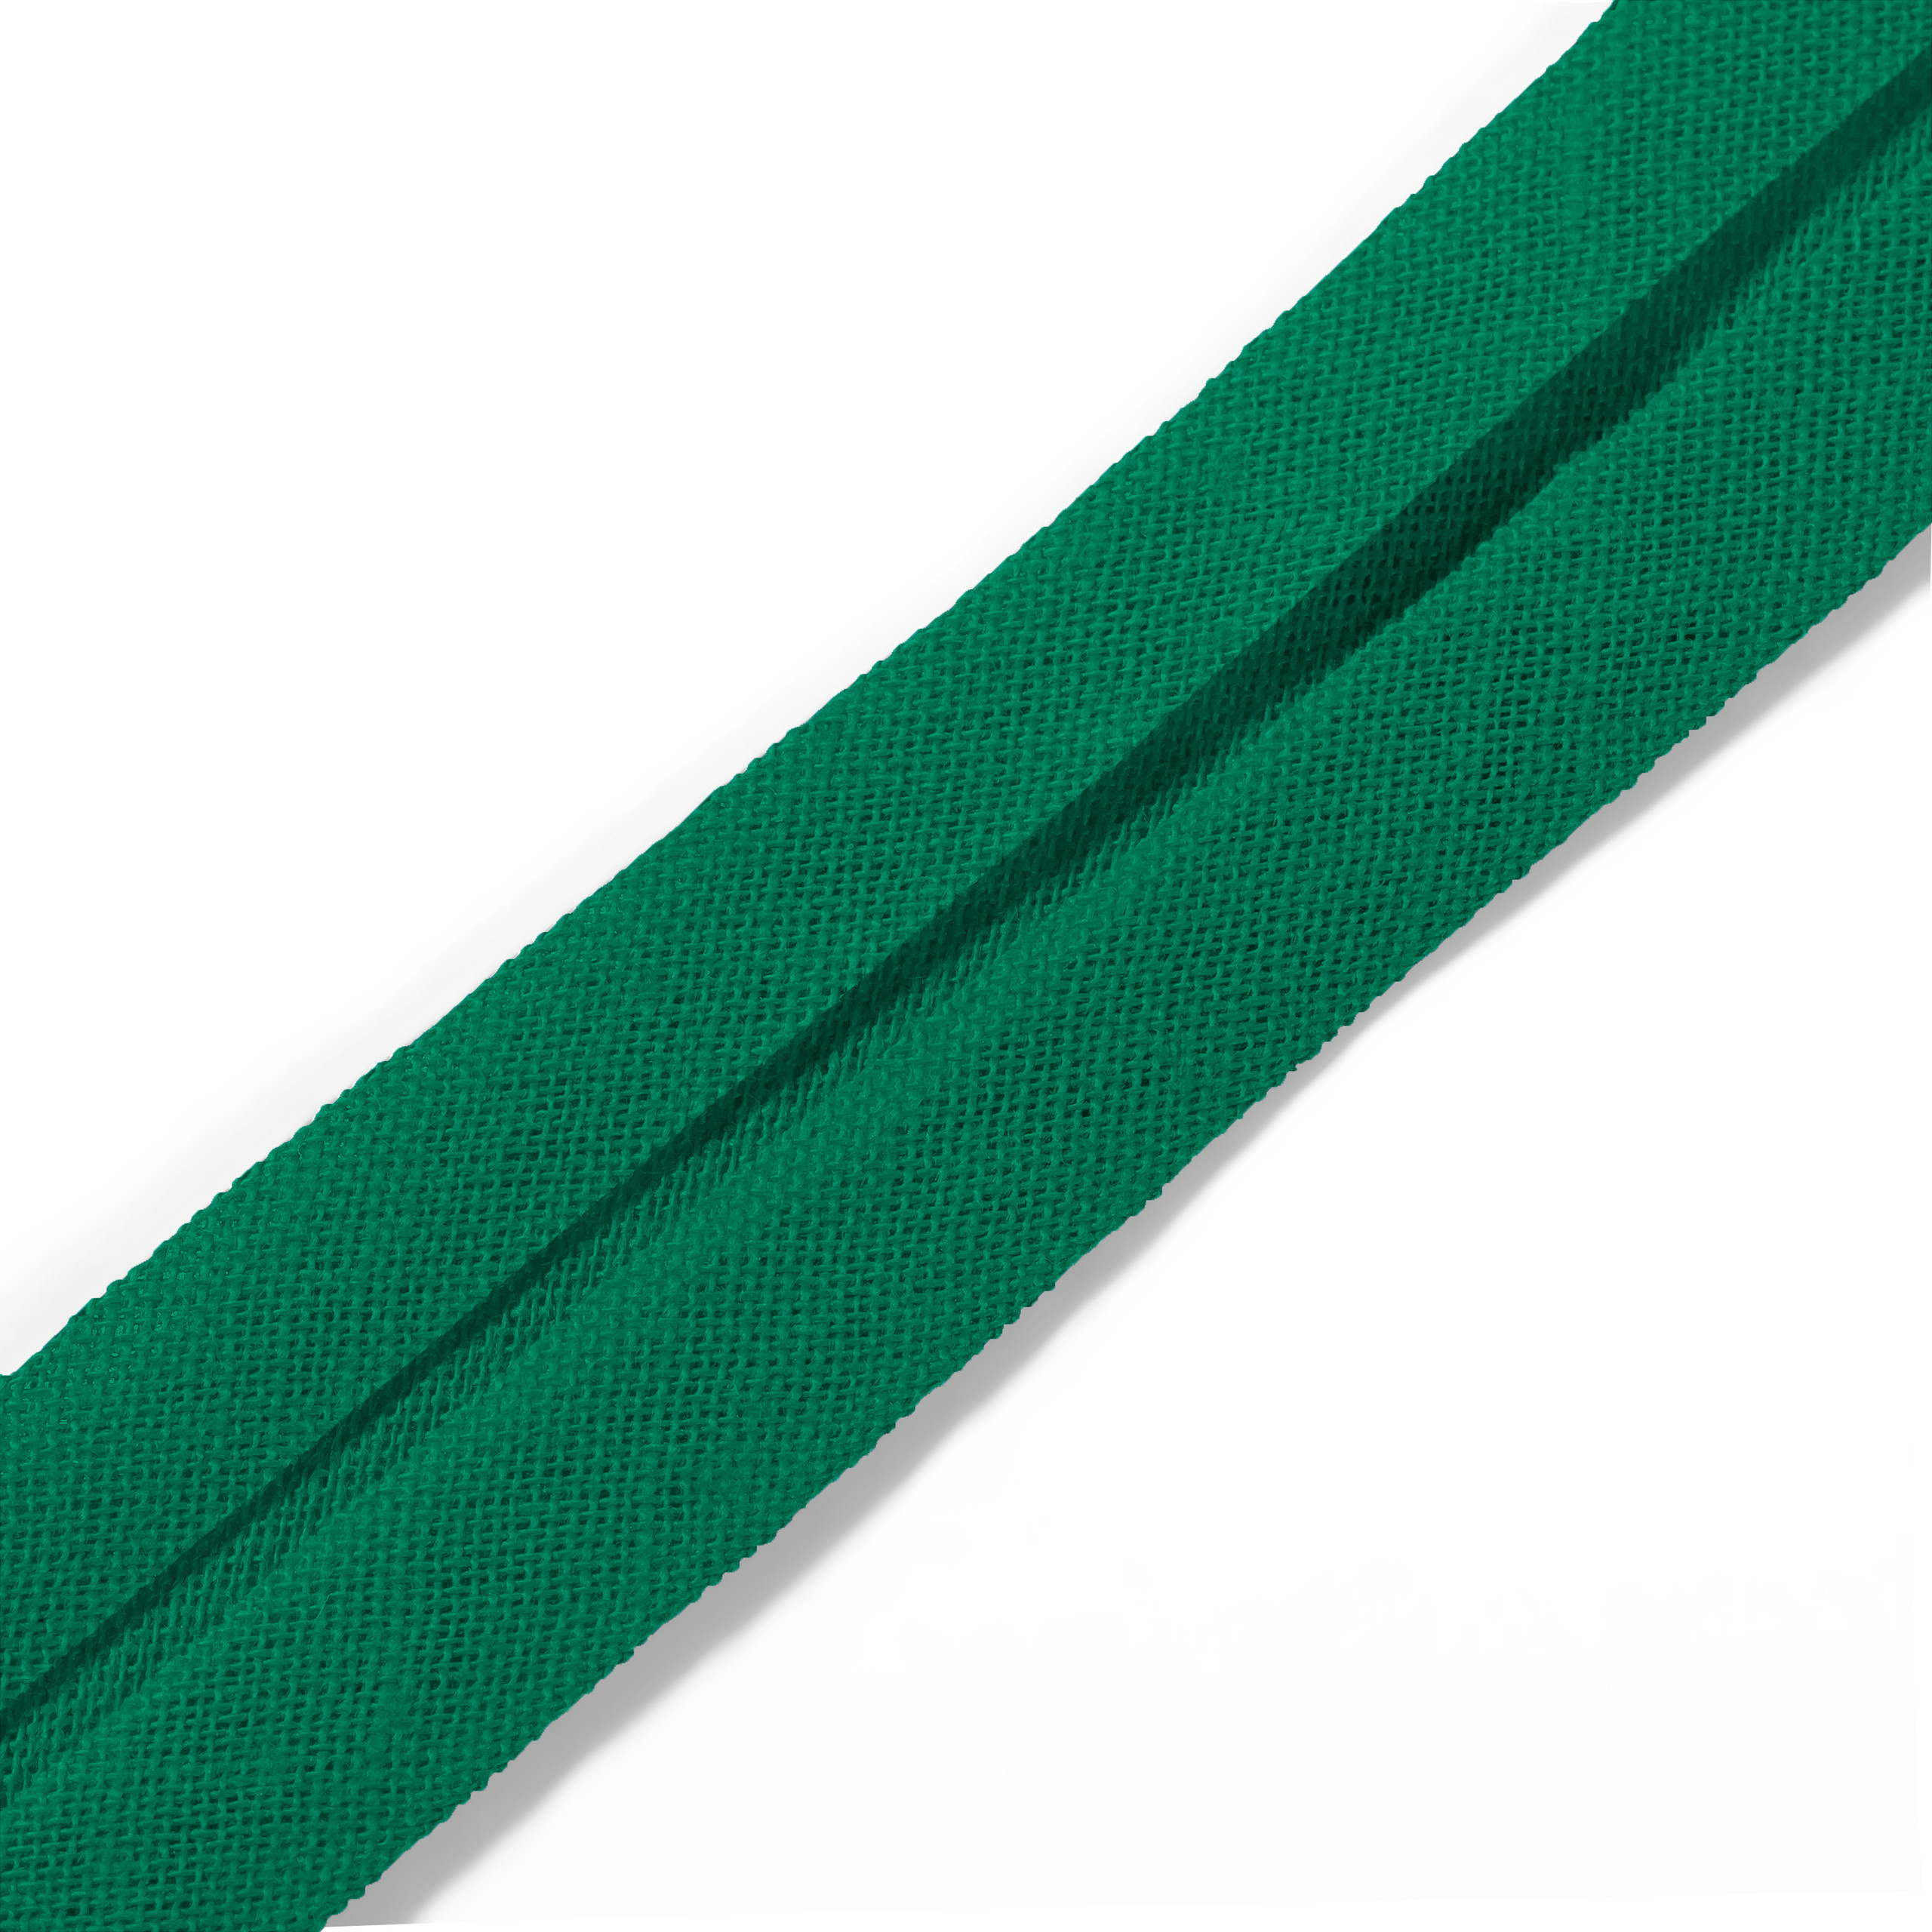 Schrägband 40/20 mm grün, Meterware, Baumwolle, Prym, Einfassband